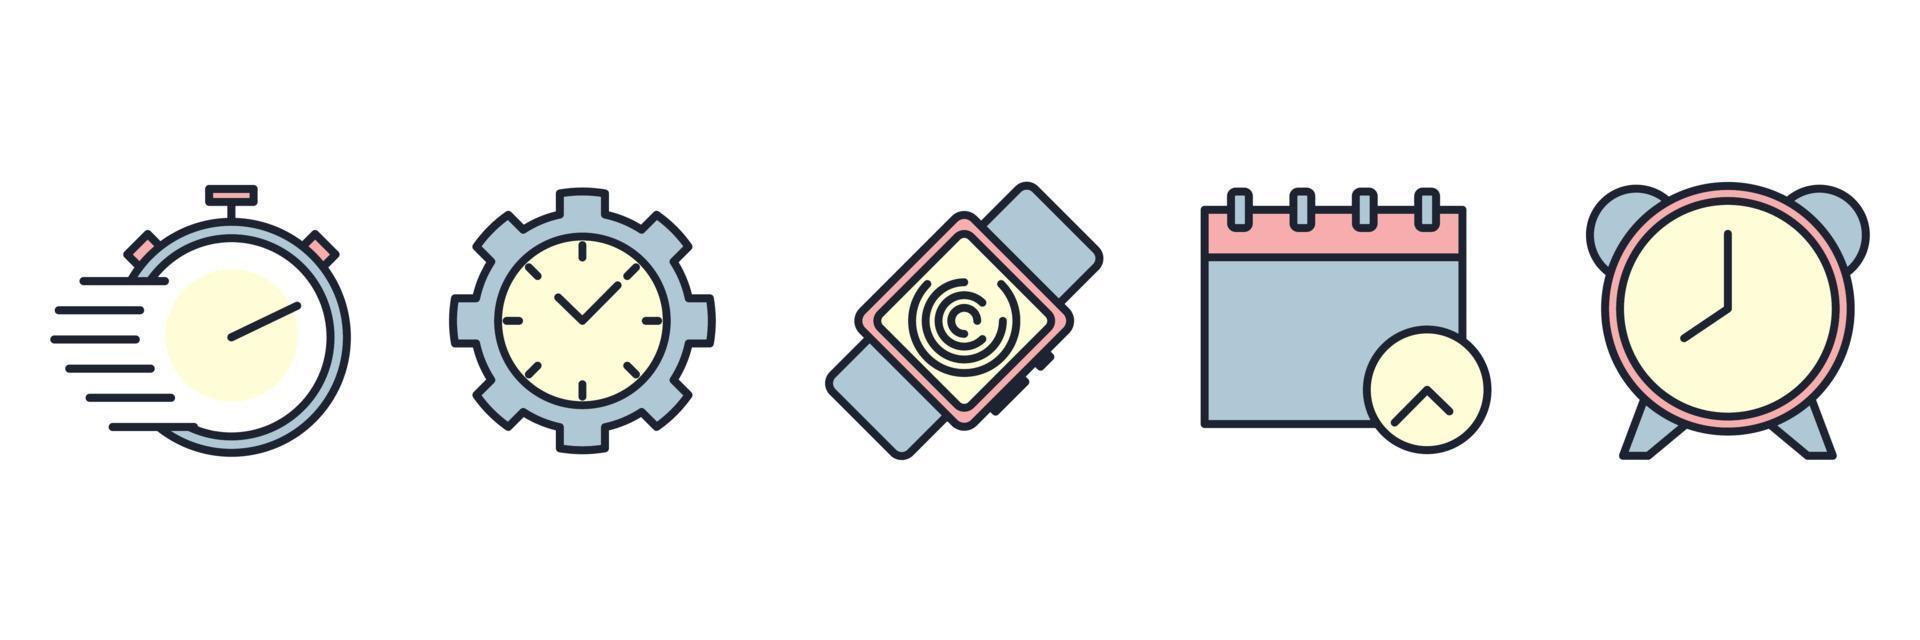 modèle de symbole d'icône de jeu de temps pour l'illustration vectorielle de logo de collection de conception graphique et web vecteur